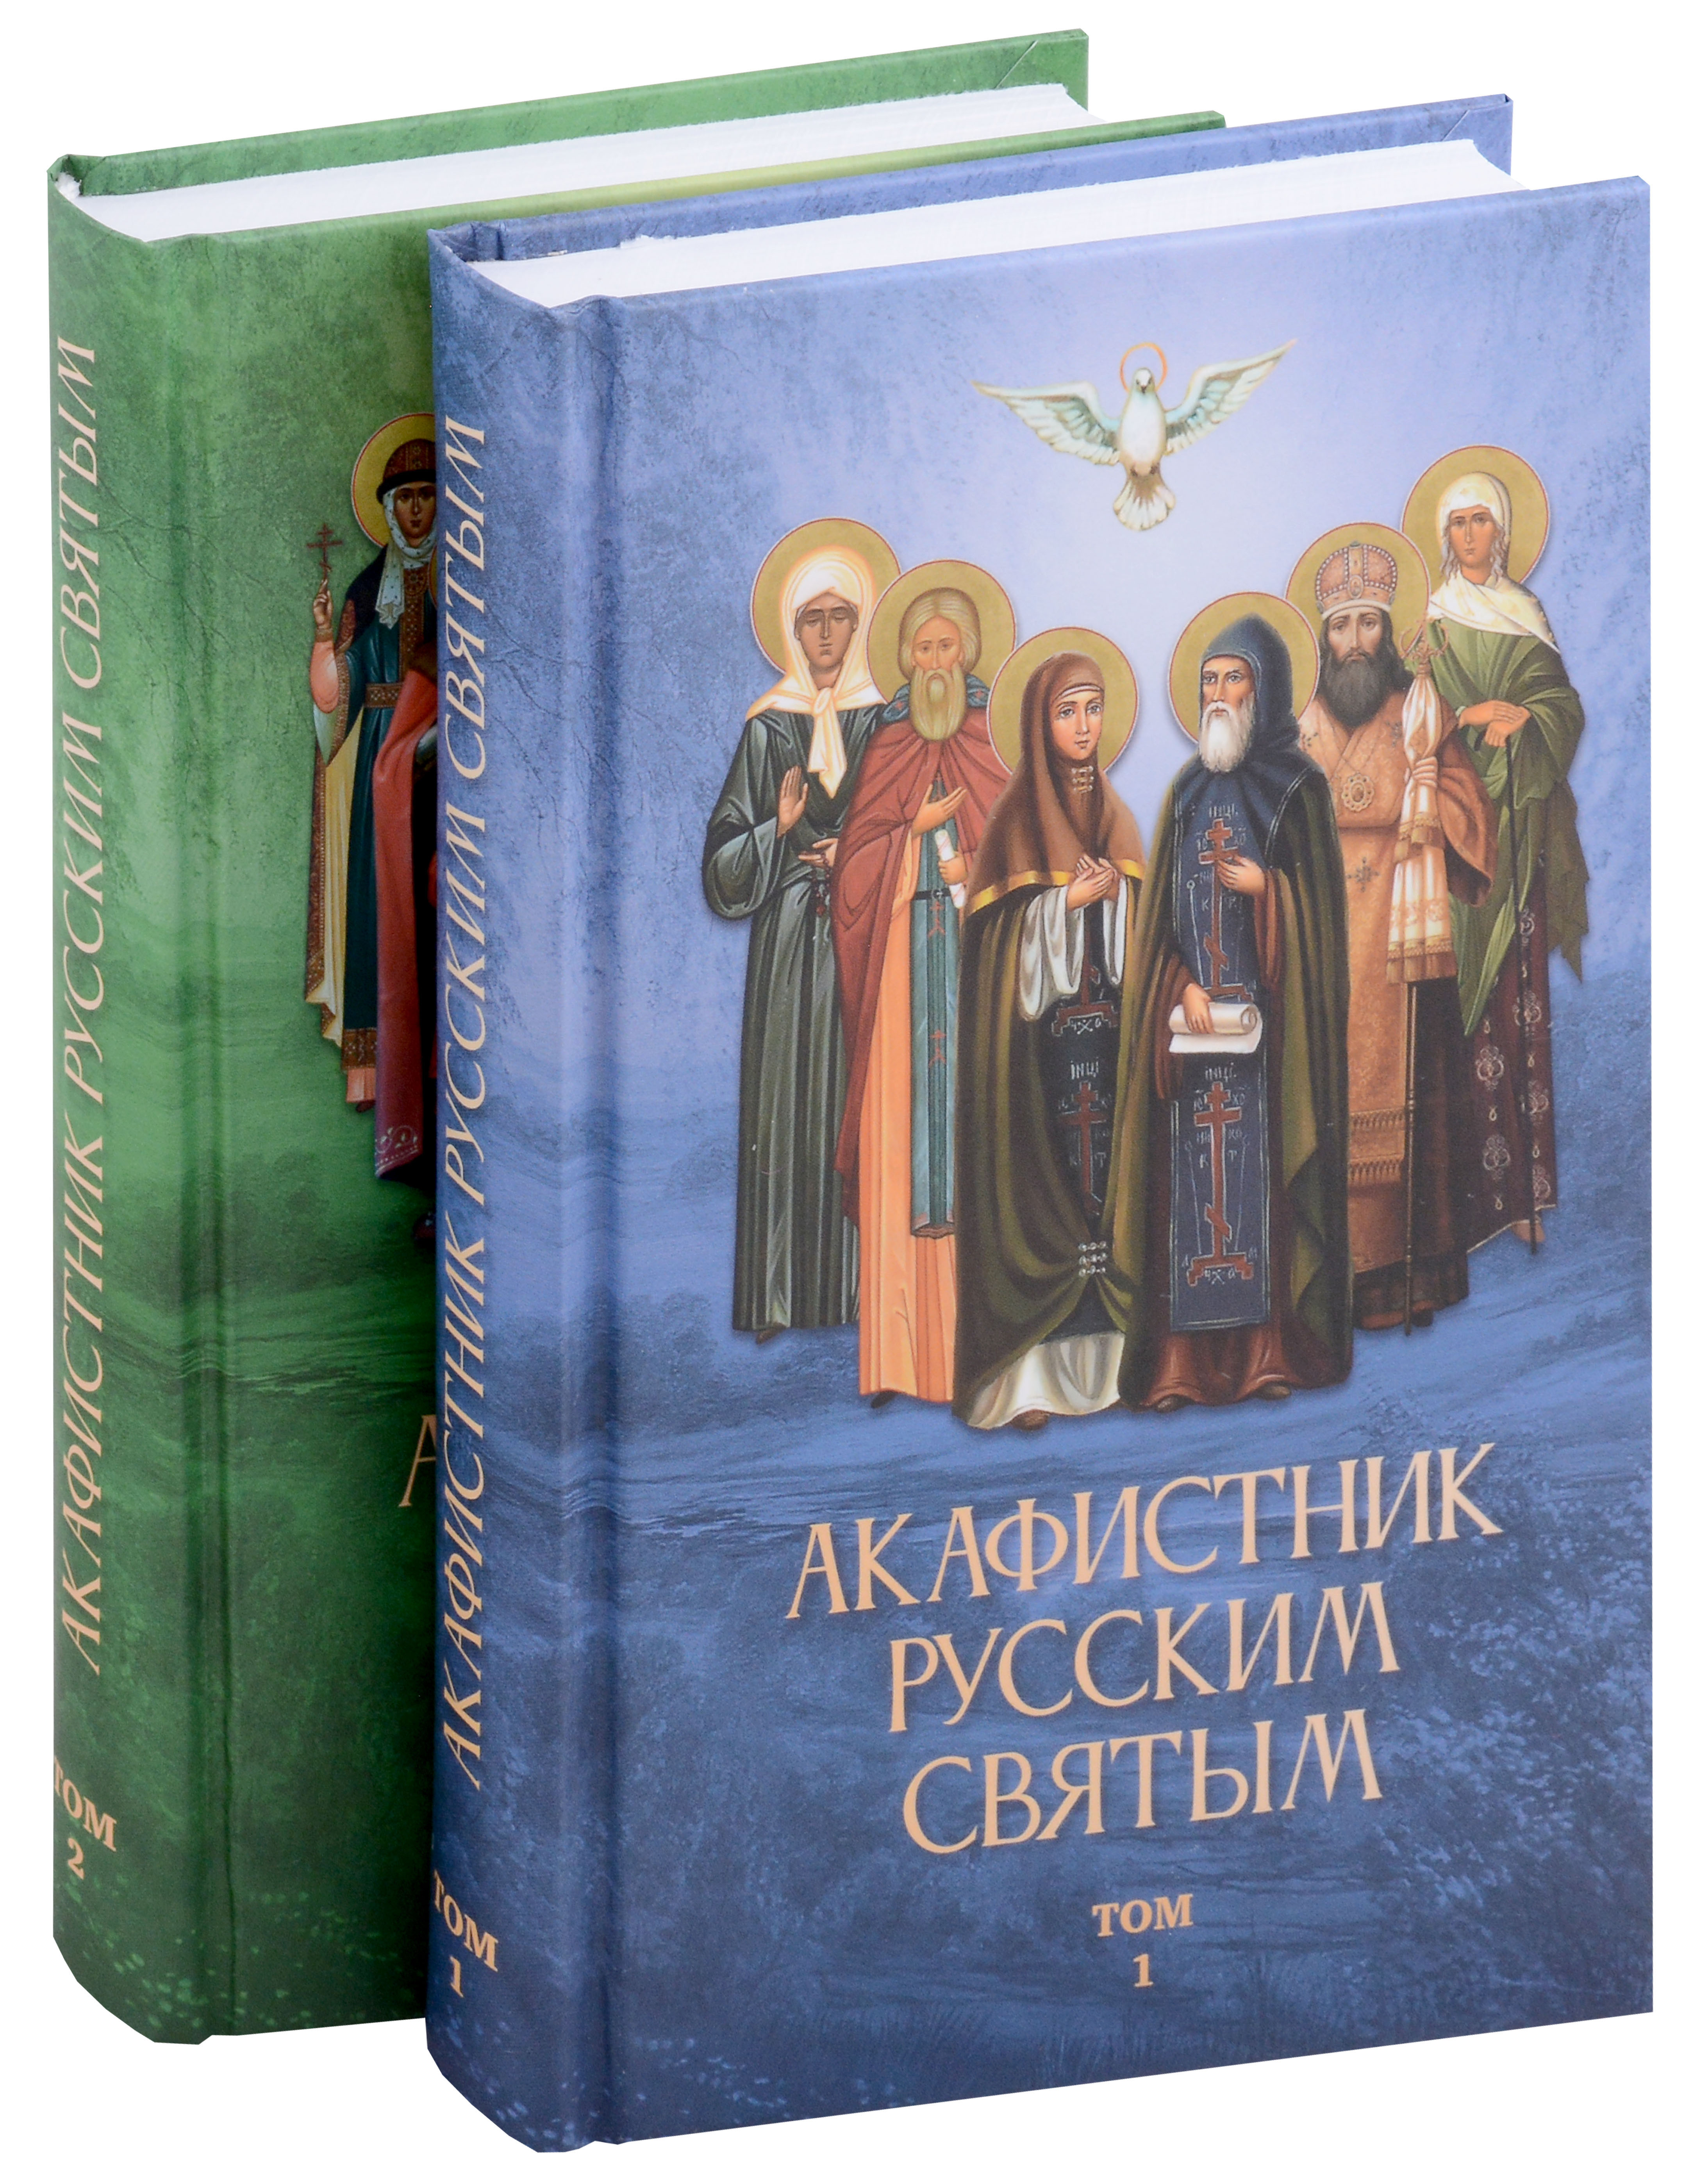 песнопения русским святым Акафистник русским святым (Комплект из 2 книг)